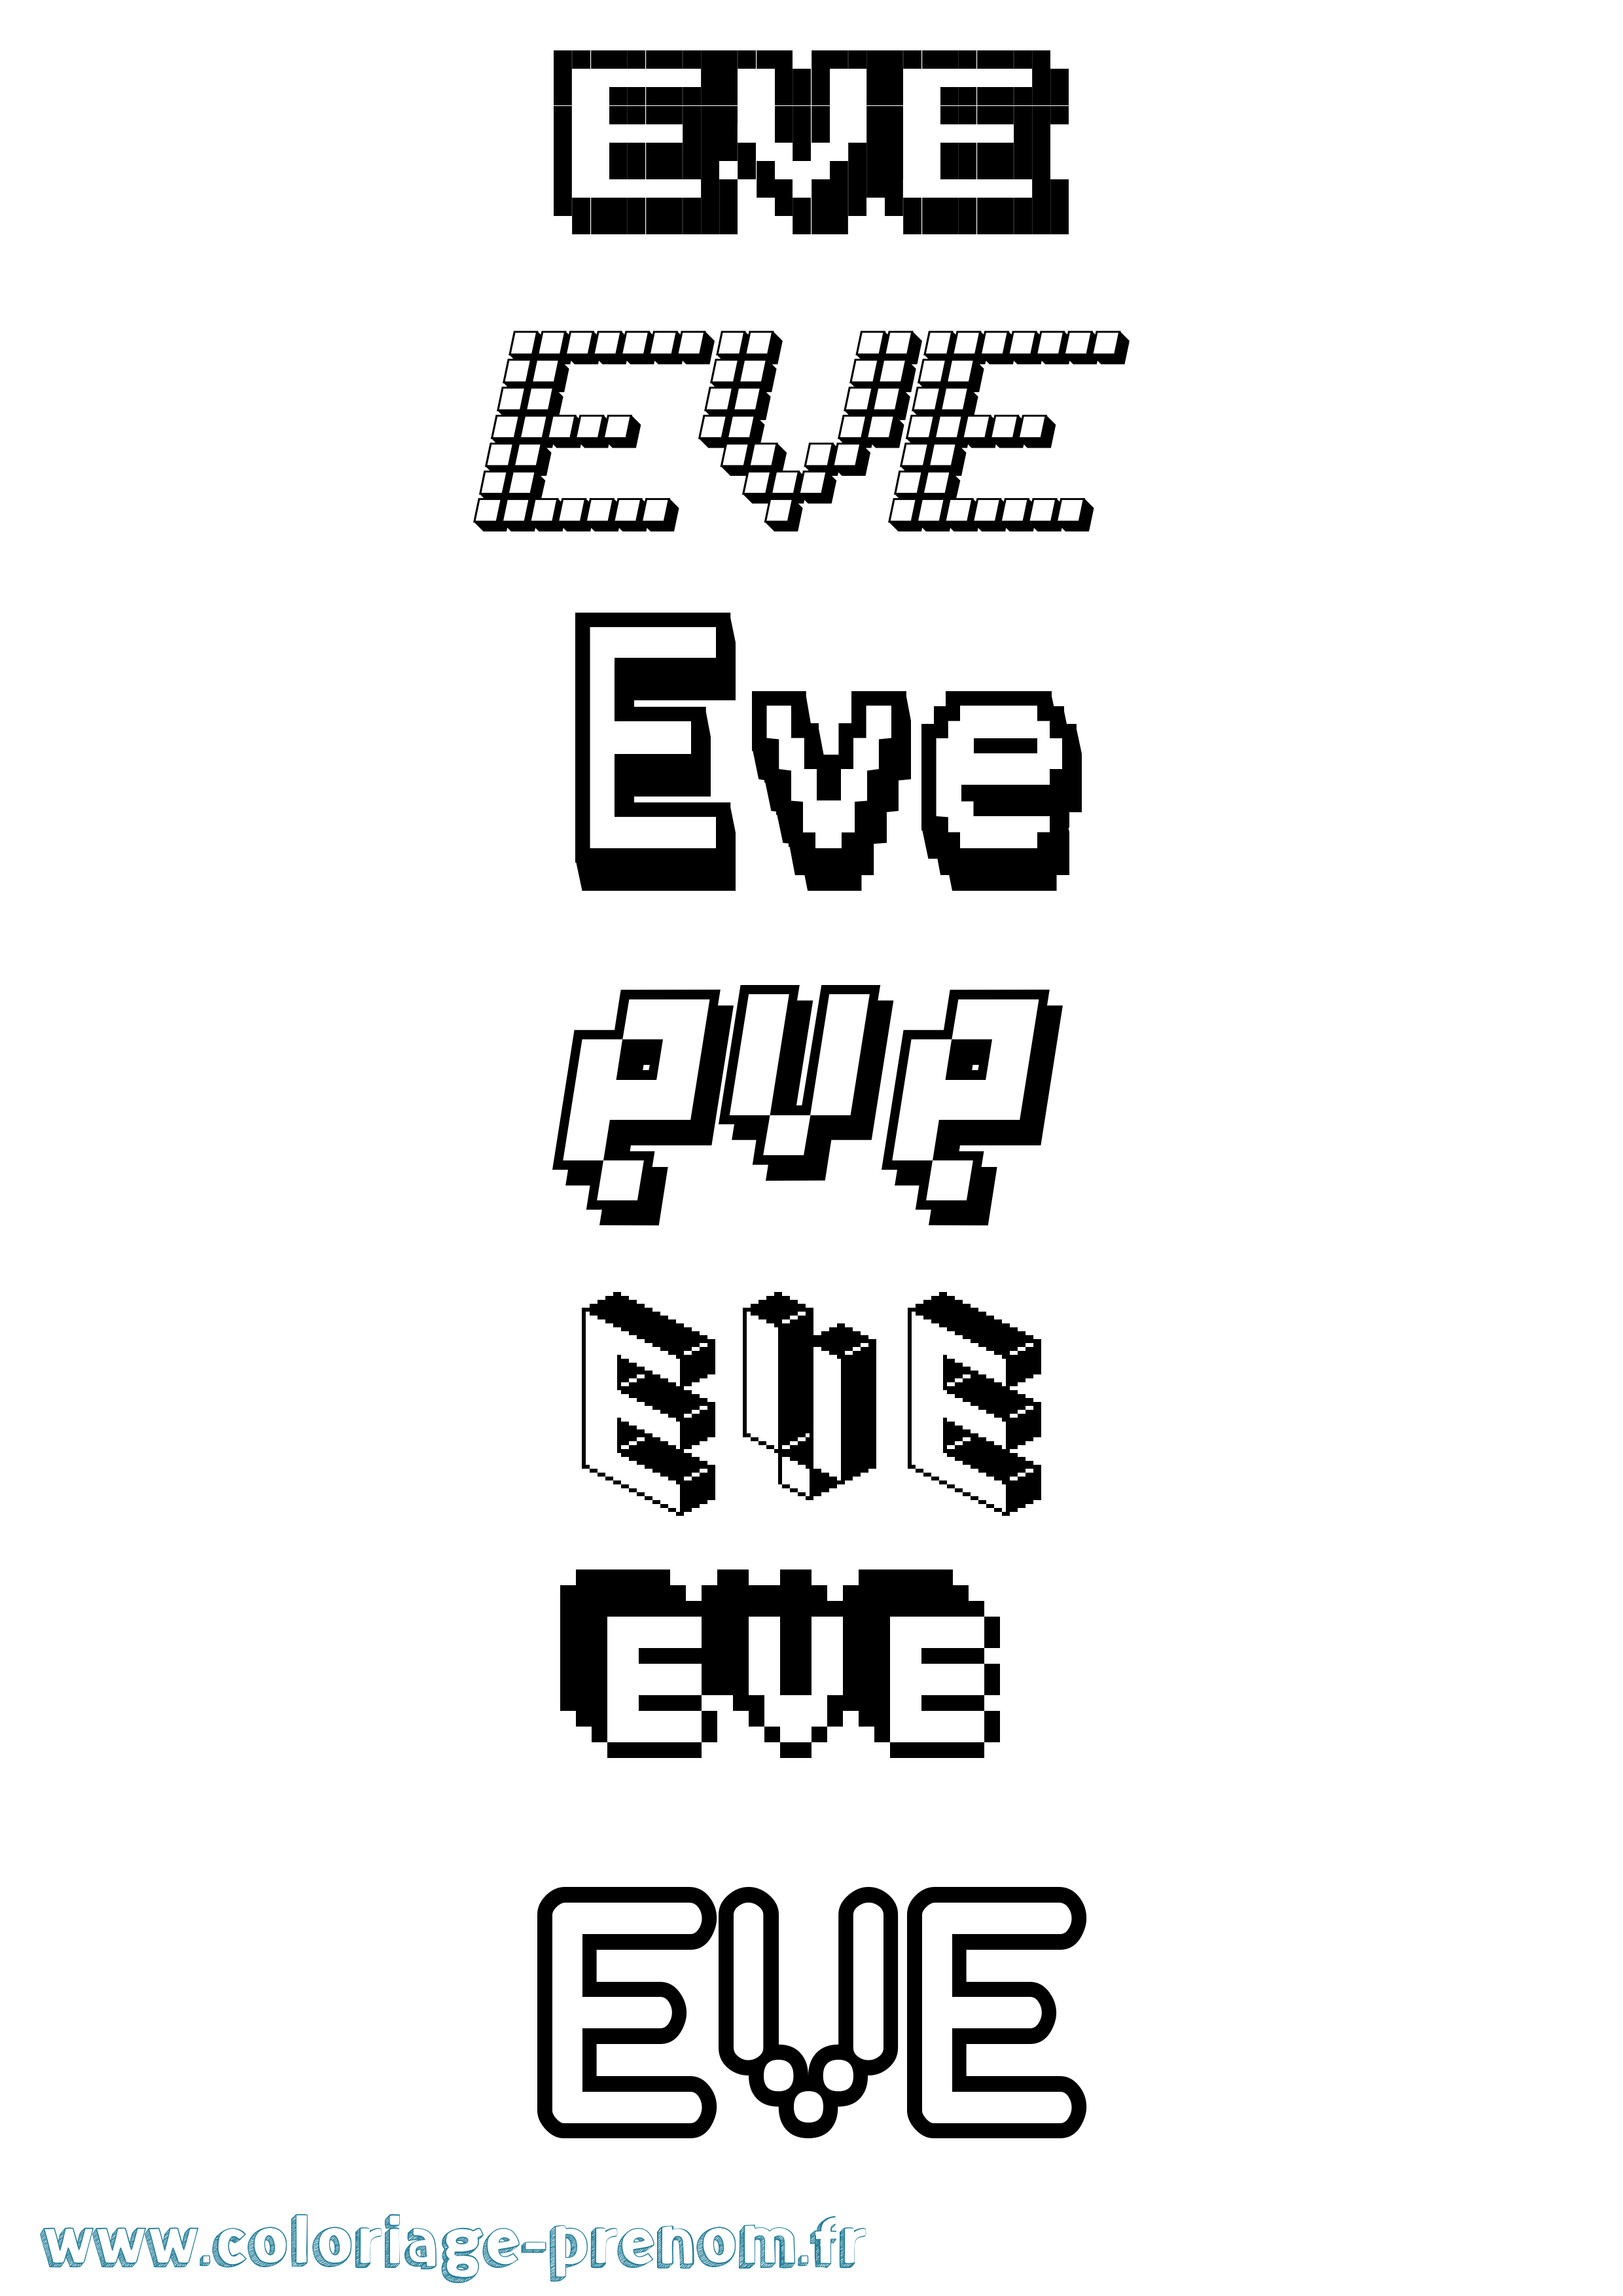 Coloriage prénom Eve Pixel